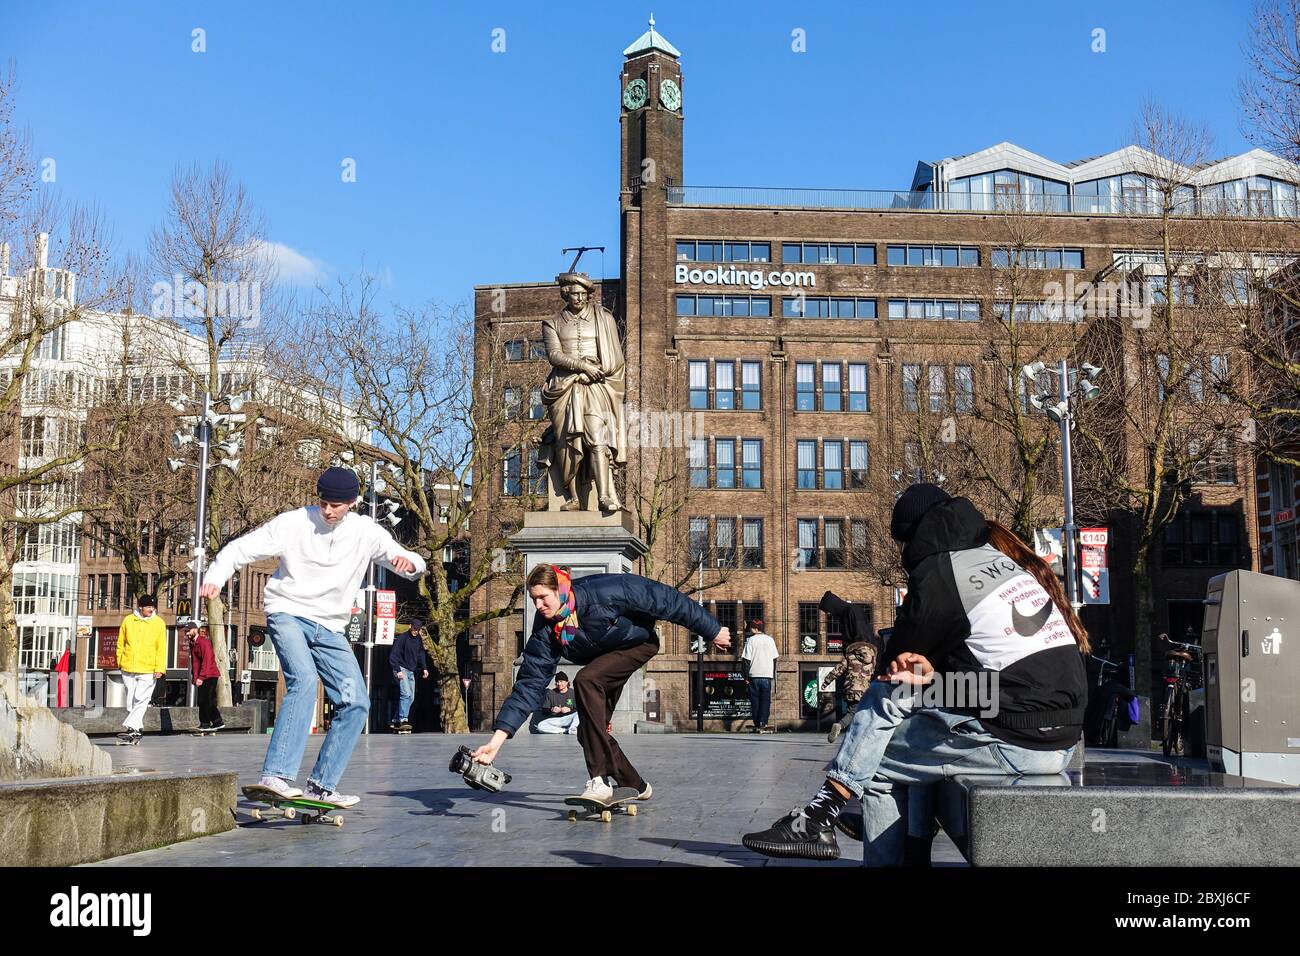 Booking.com Siège de Rembrandtplein à Amsterdam, avec patineurs pendant la crise du coronavirus Banque D'Images